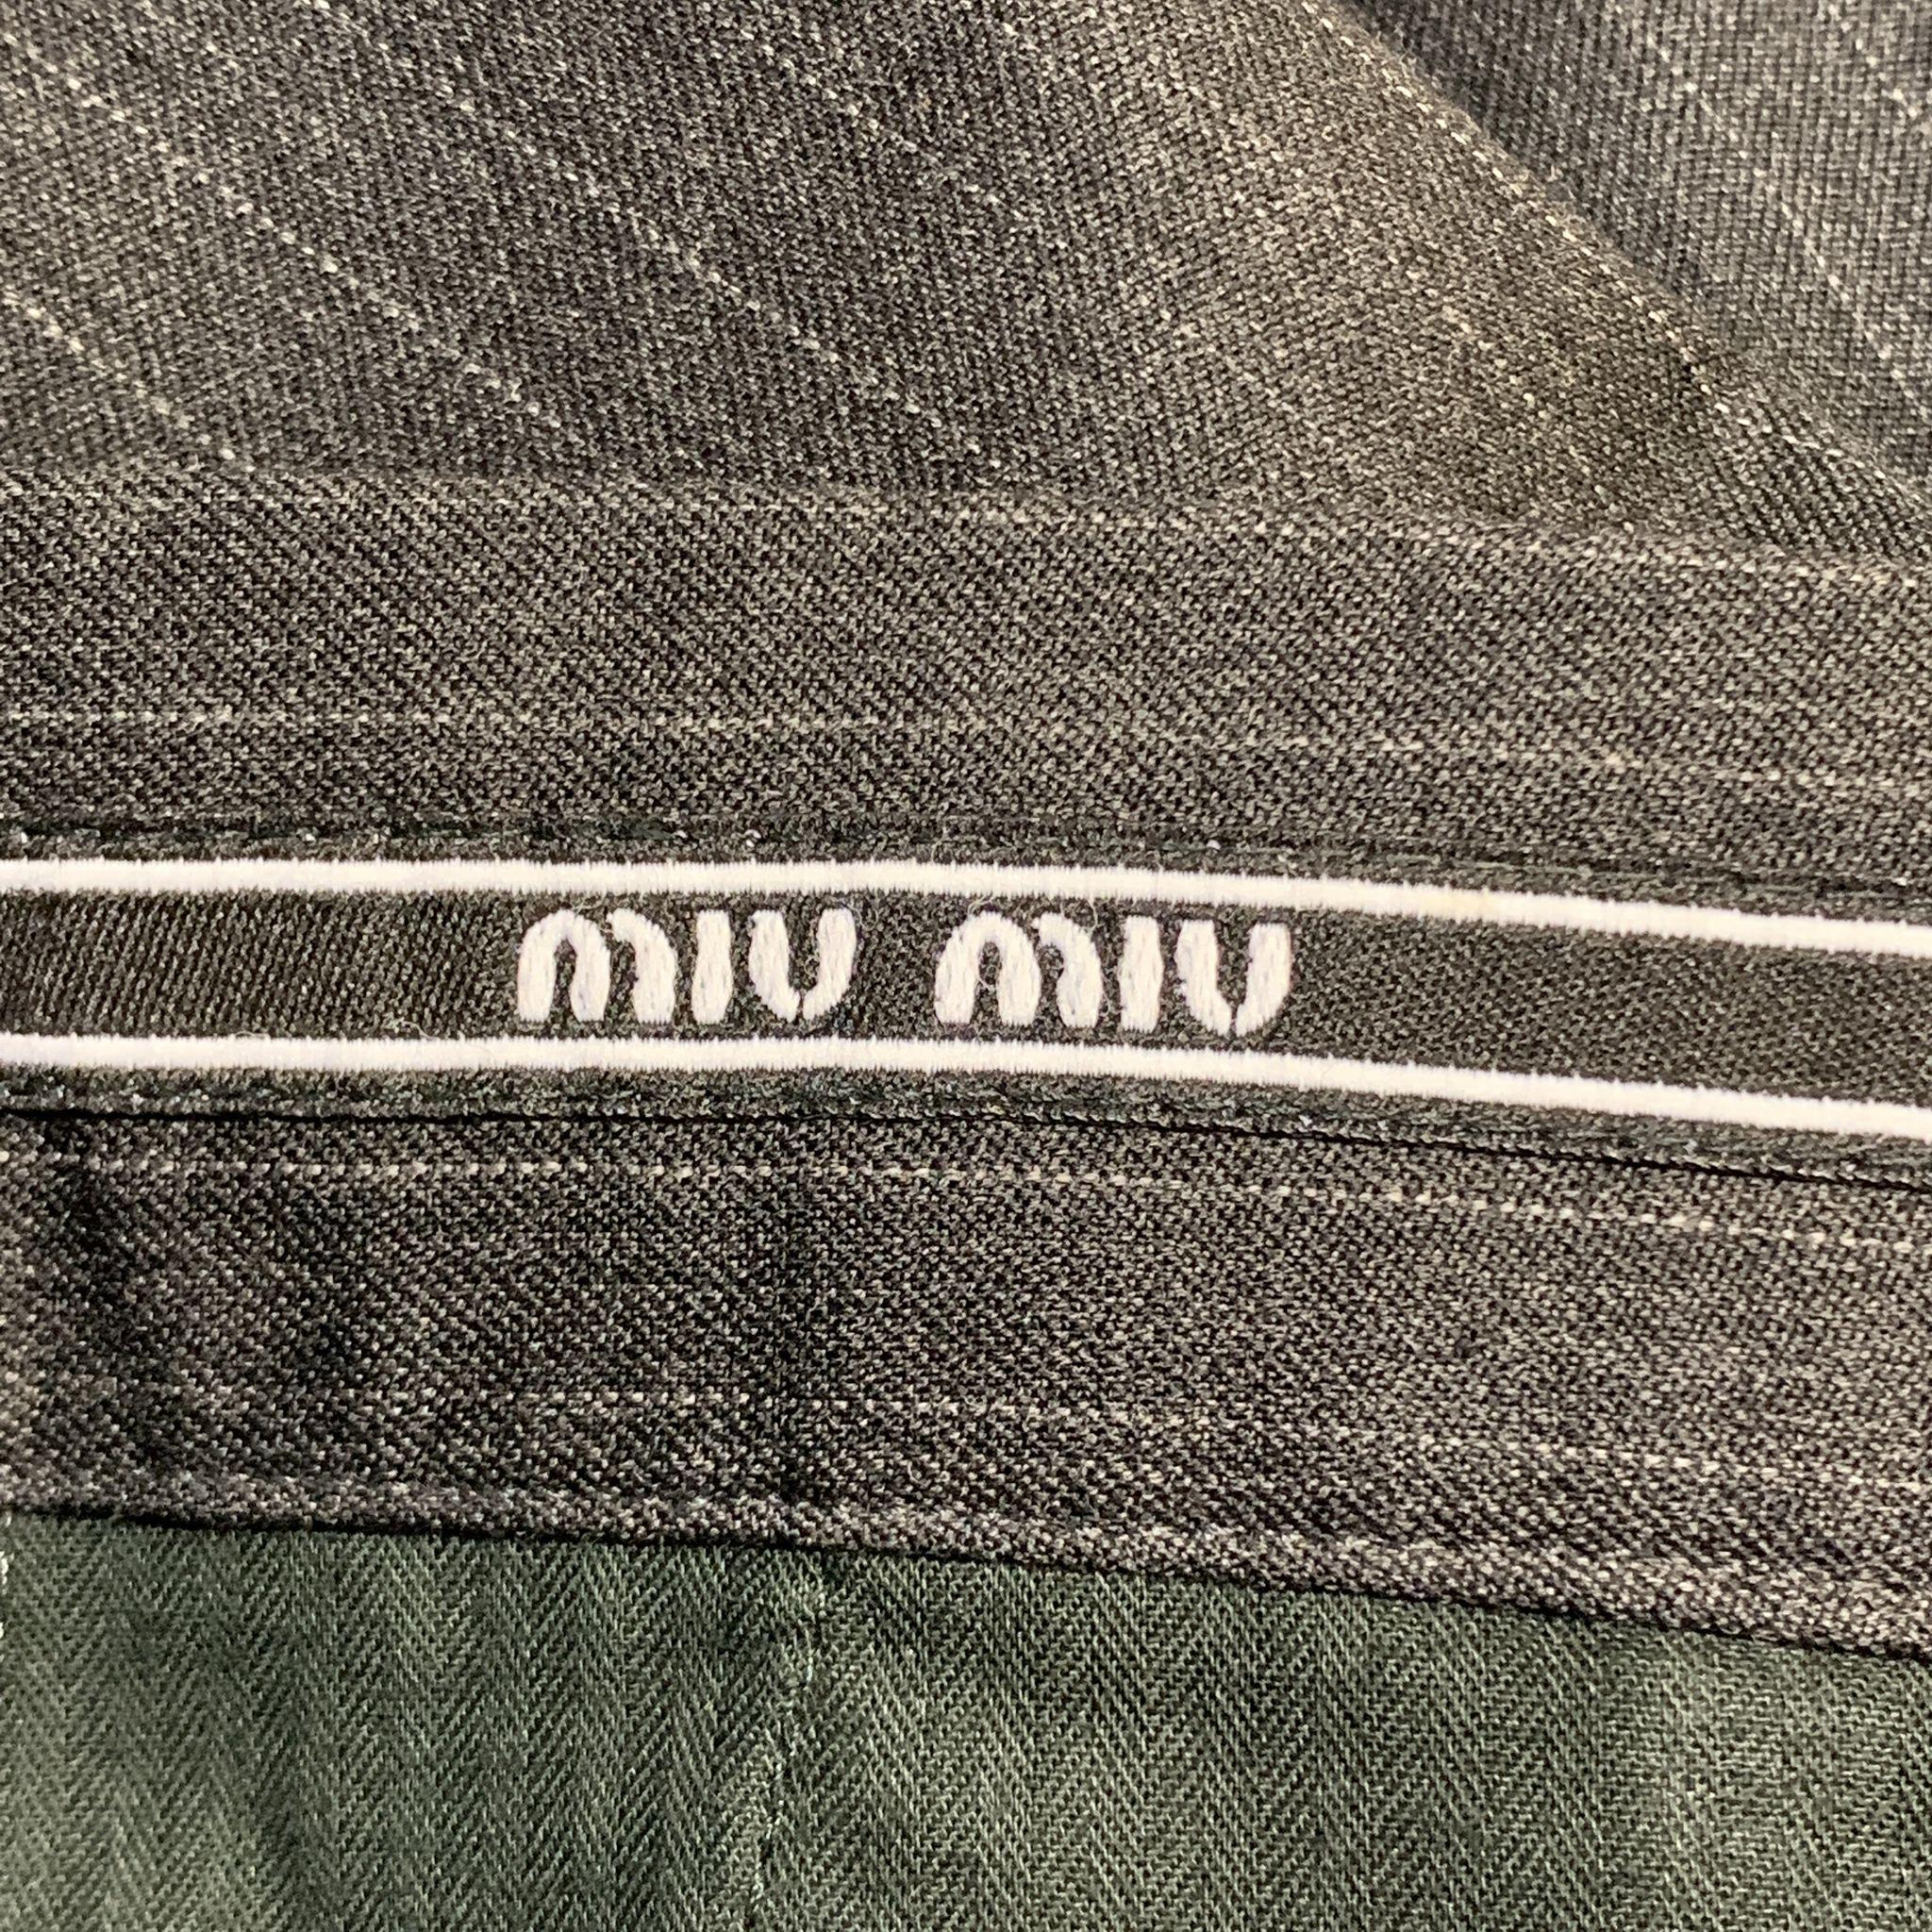 Men's MIU MIU Size 30 Stripe Dark Gray Wool Pleated Dress Pants